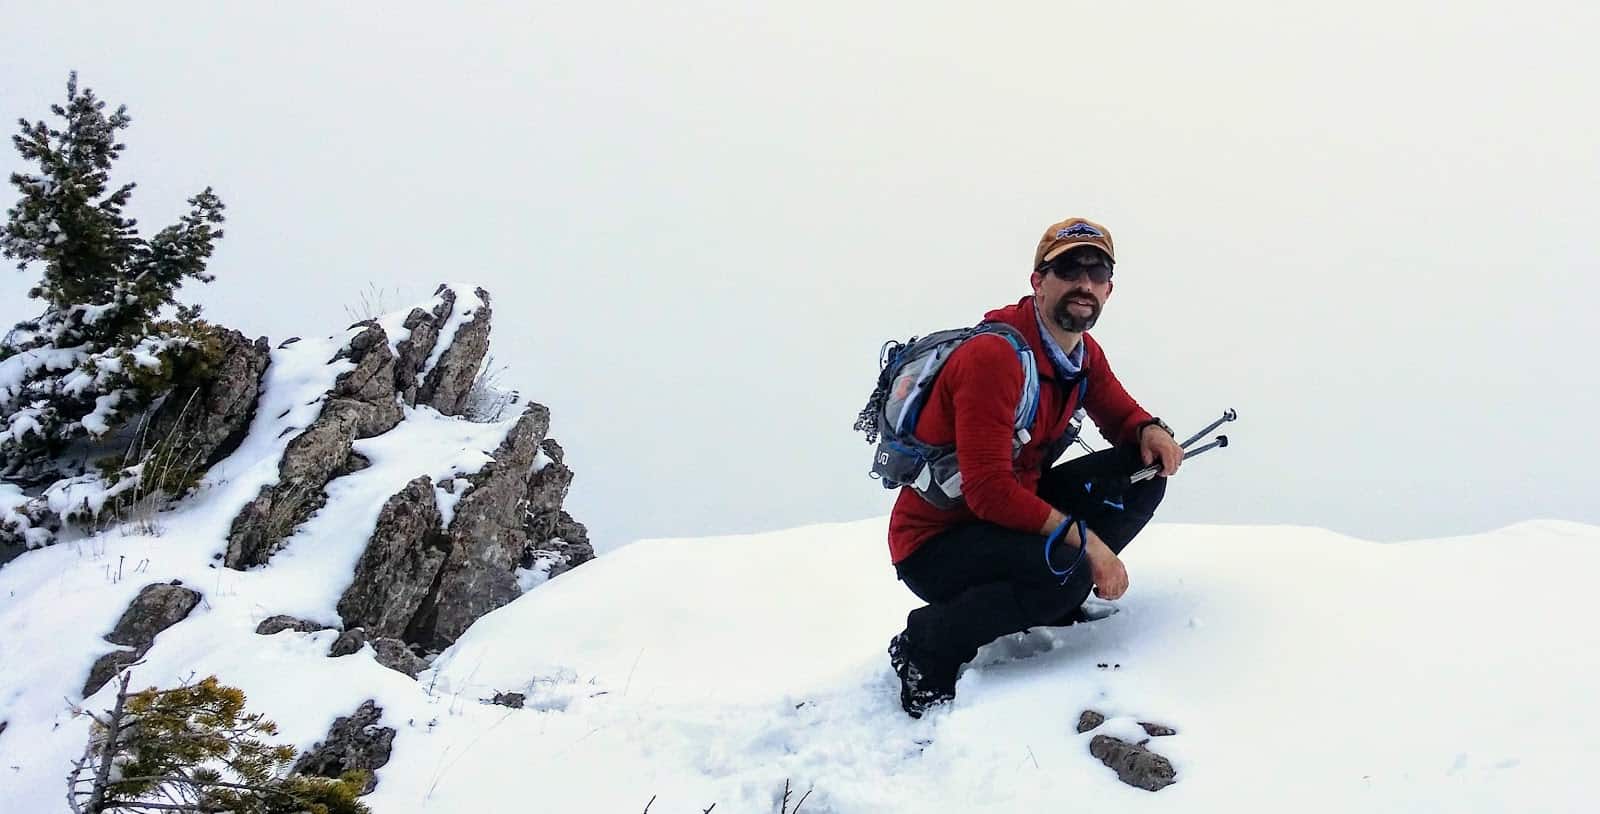 Treyl DuraLight Pro Trekking Poles - Ultralight For Backpacking